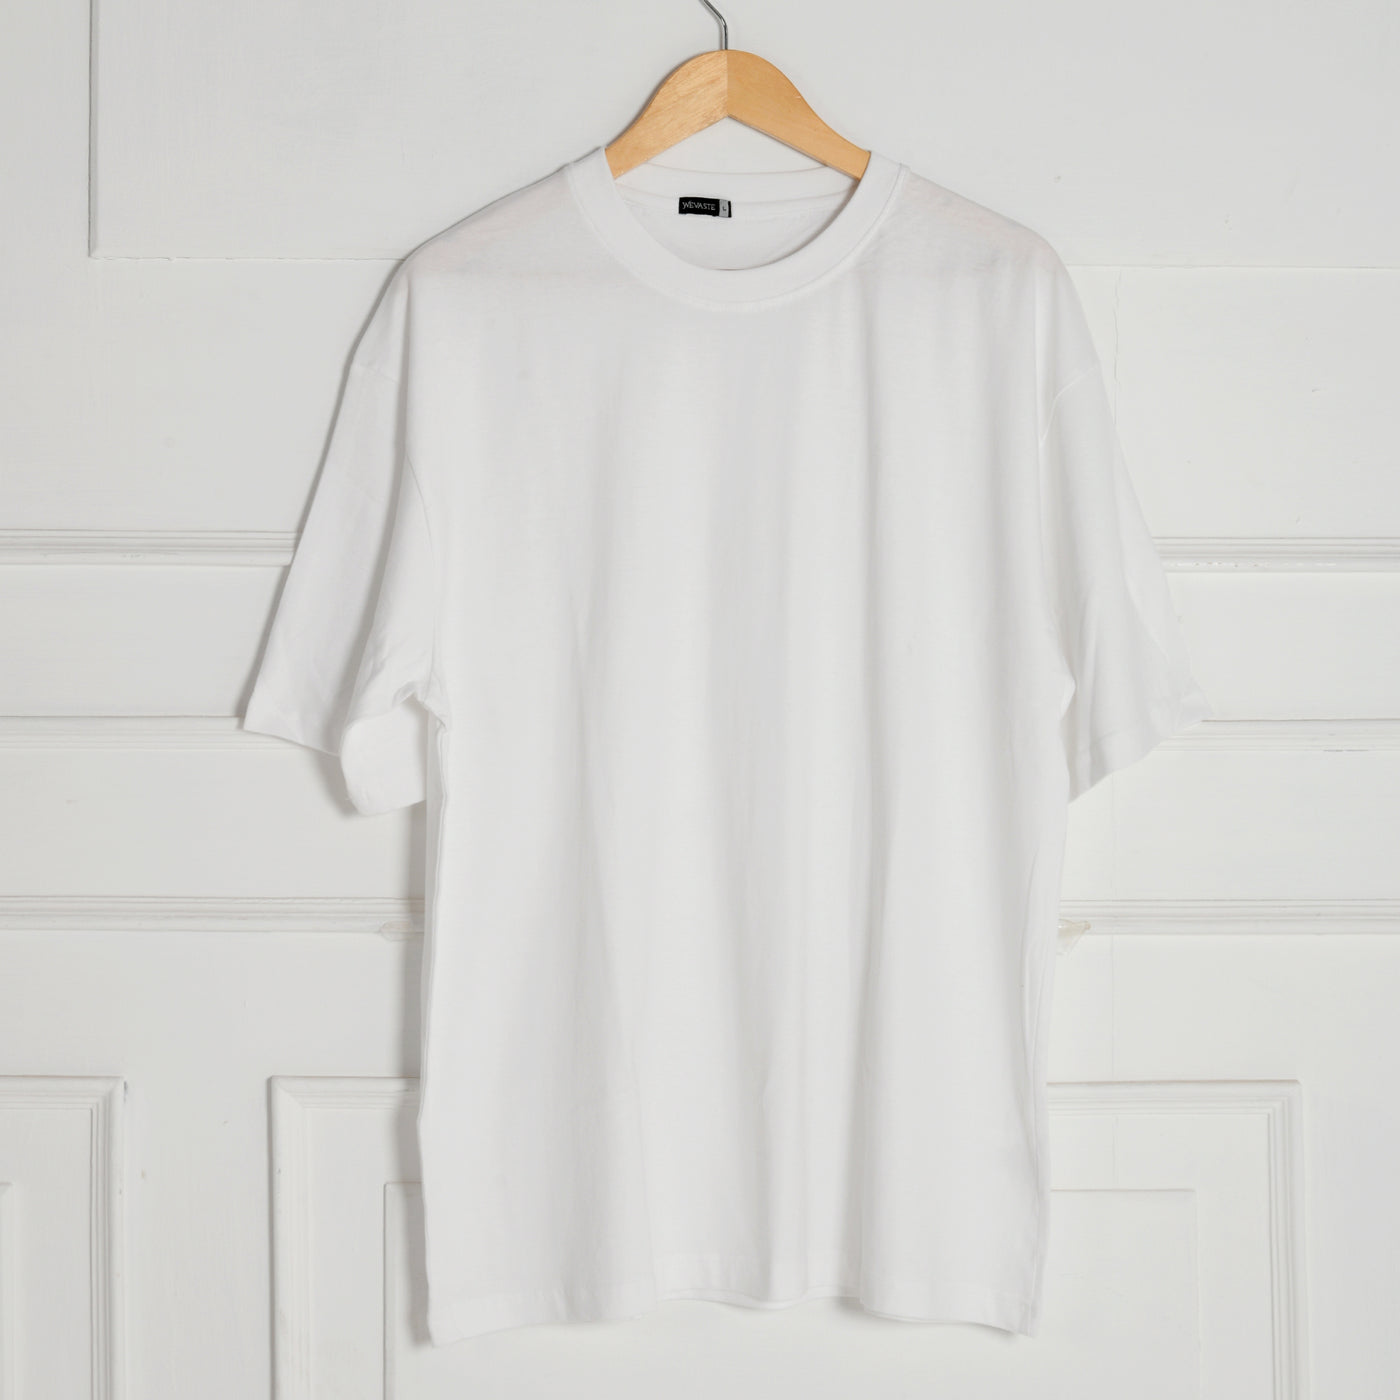 Pick Any 3- Plain T-shirt Combo